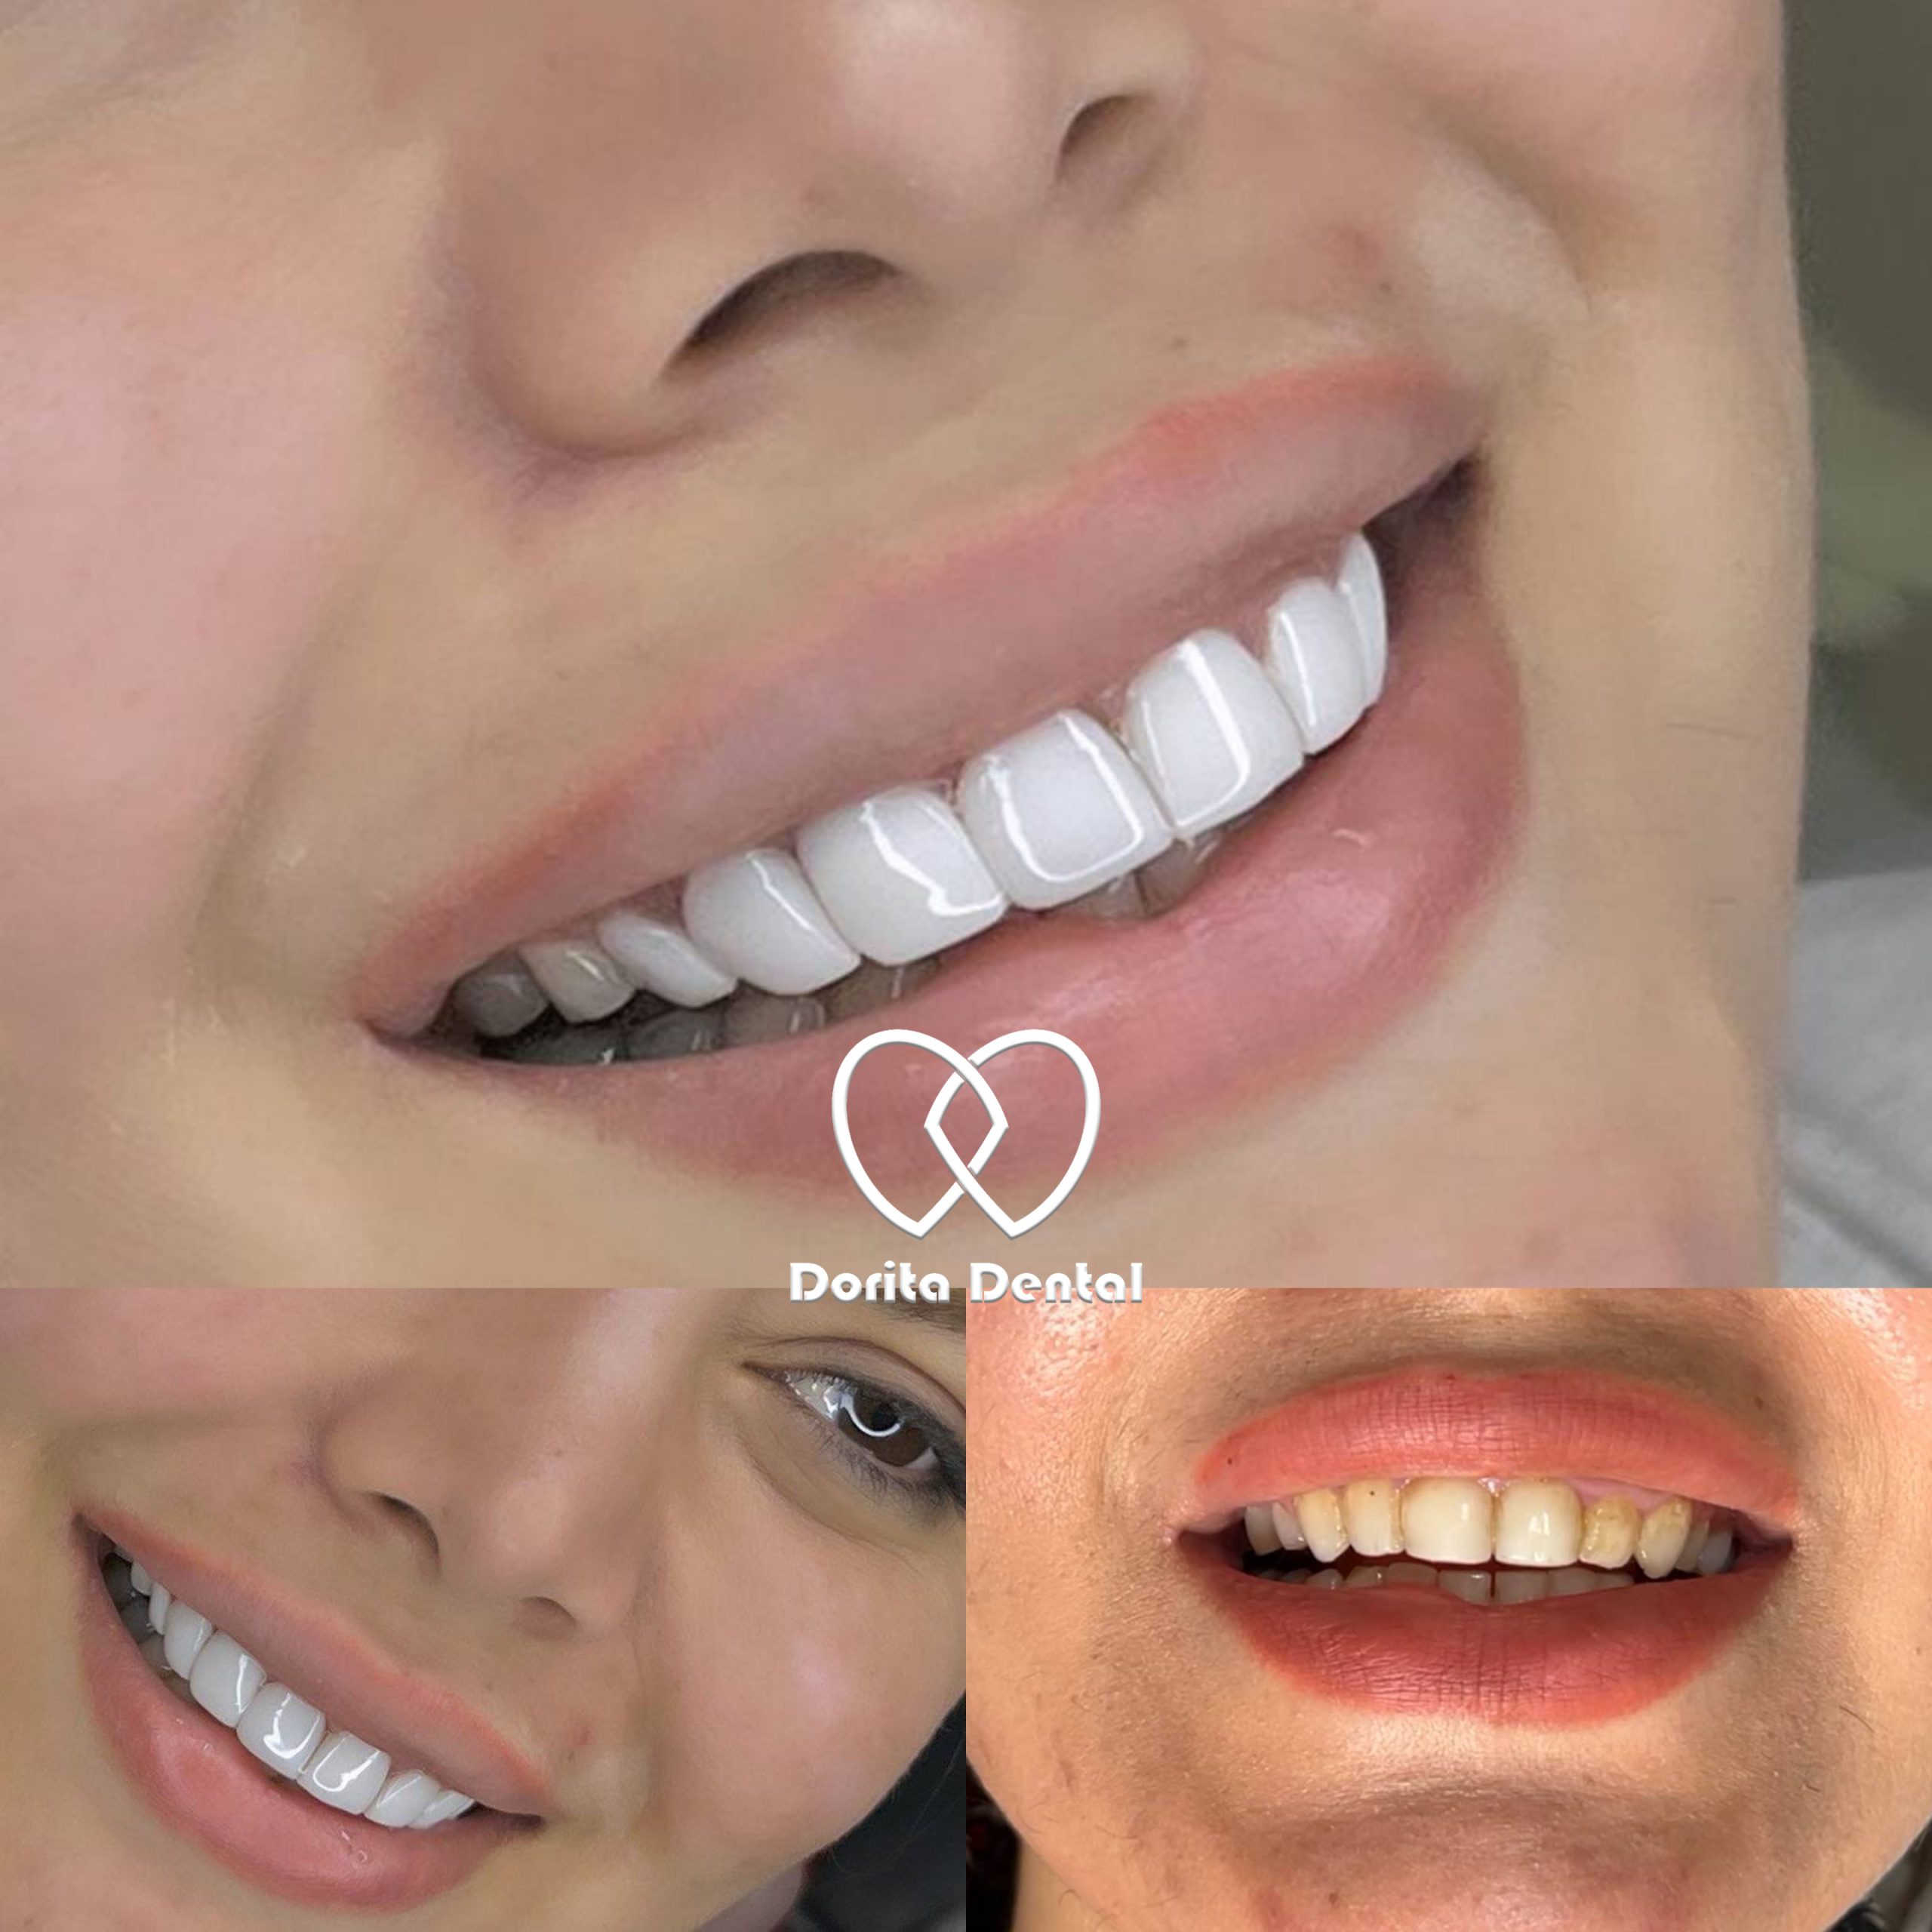 نمونه کار دندانپزشکی دریتا دنتال